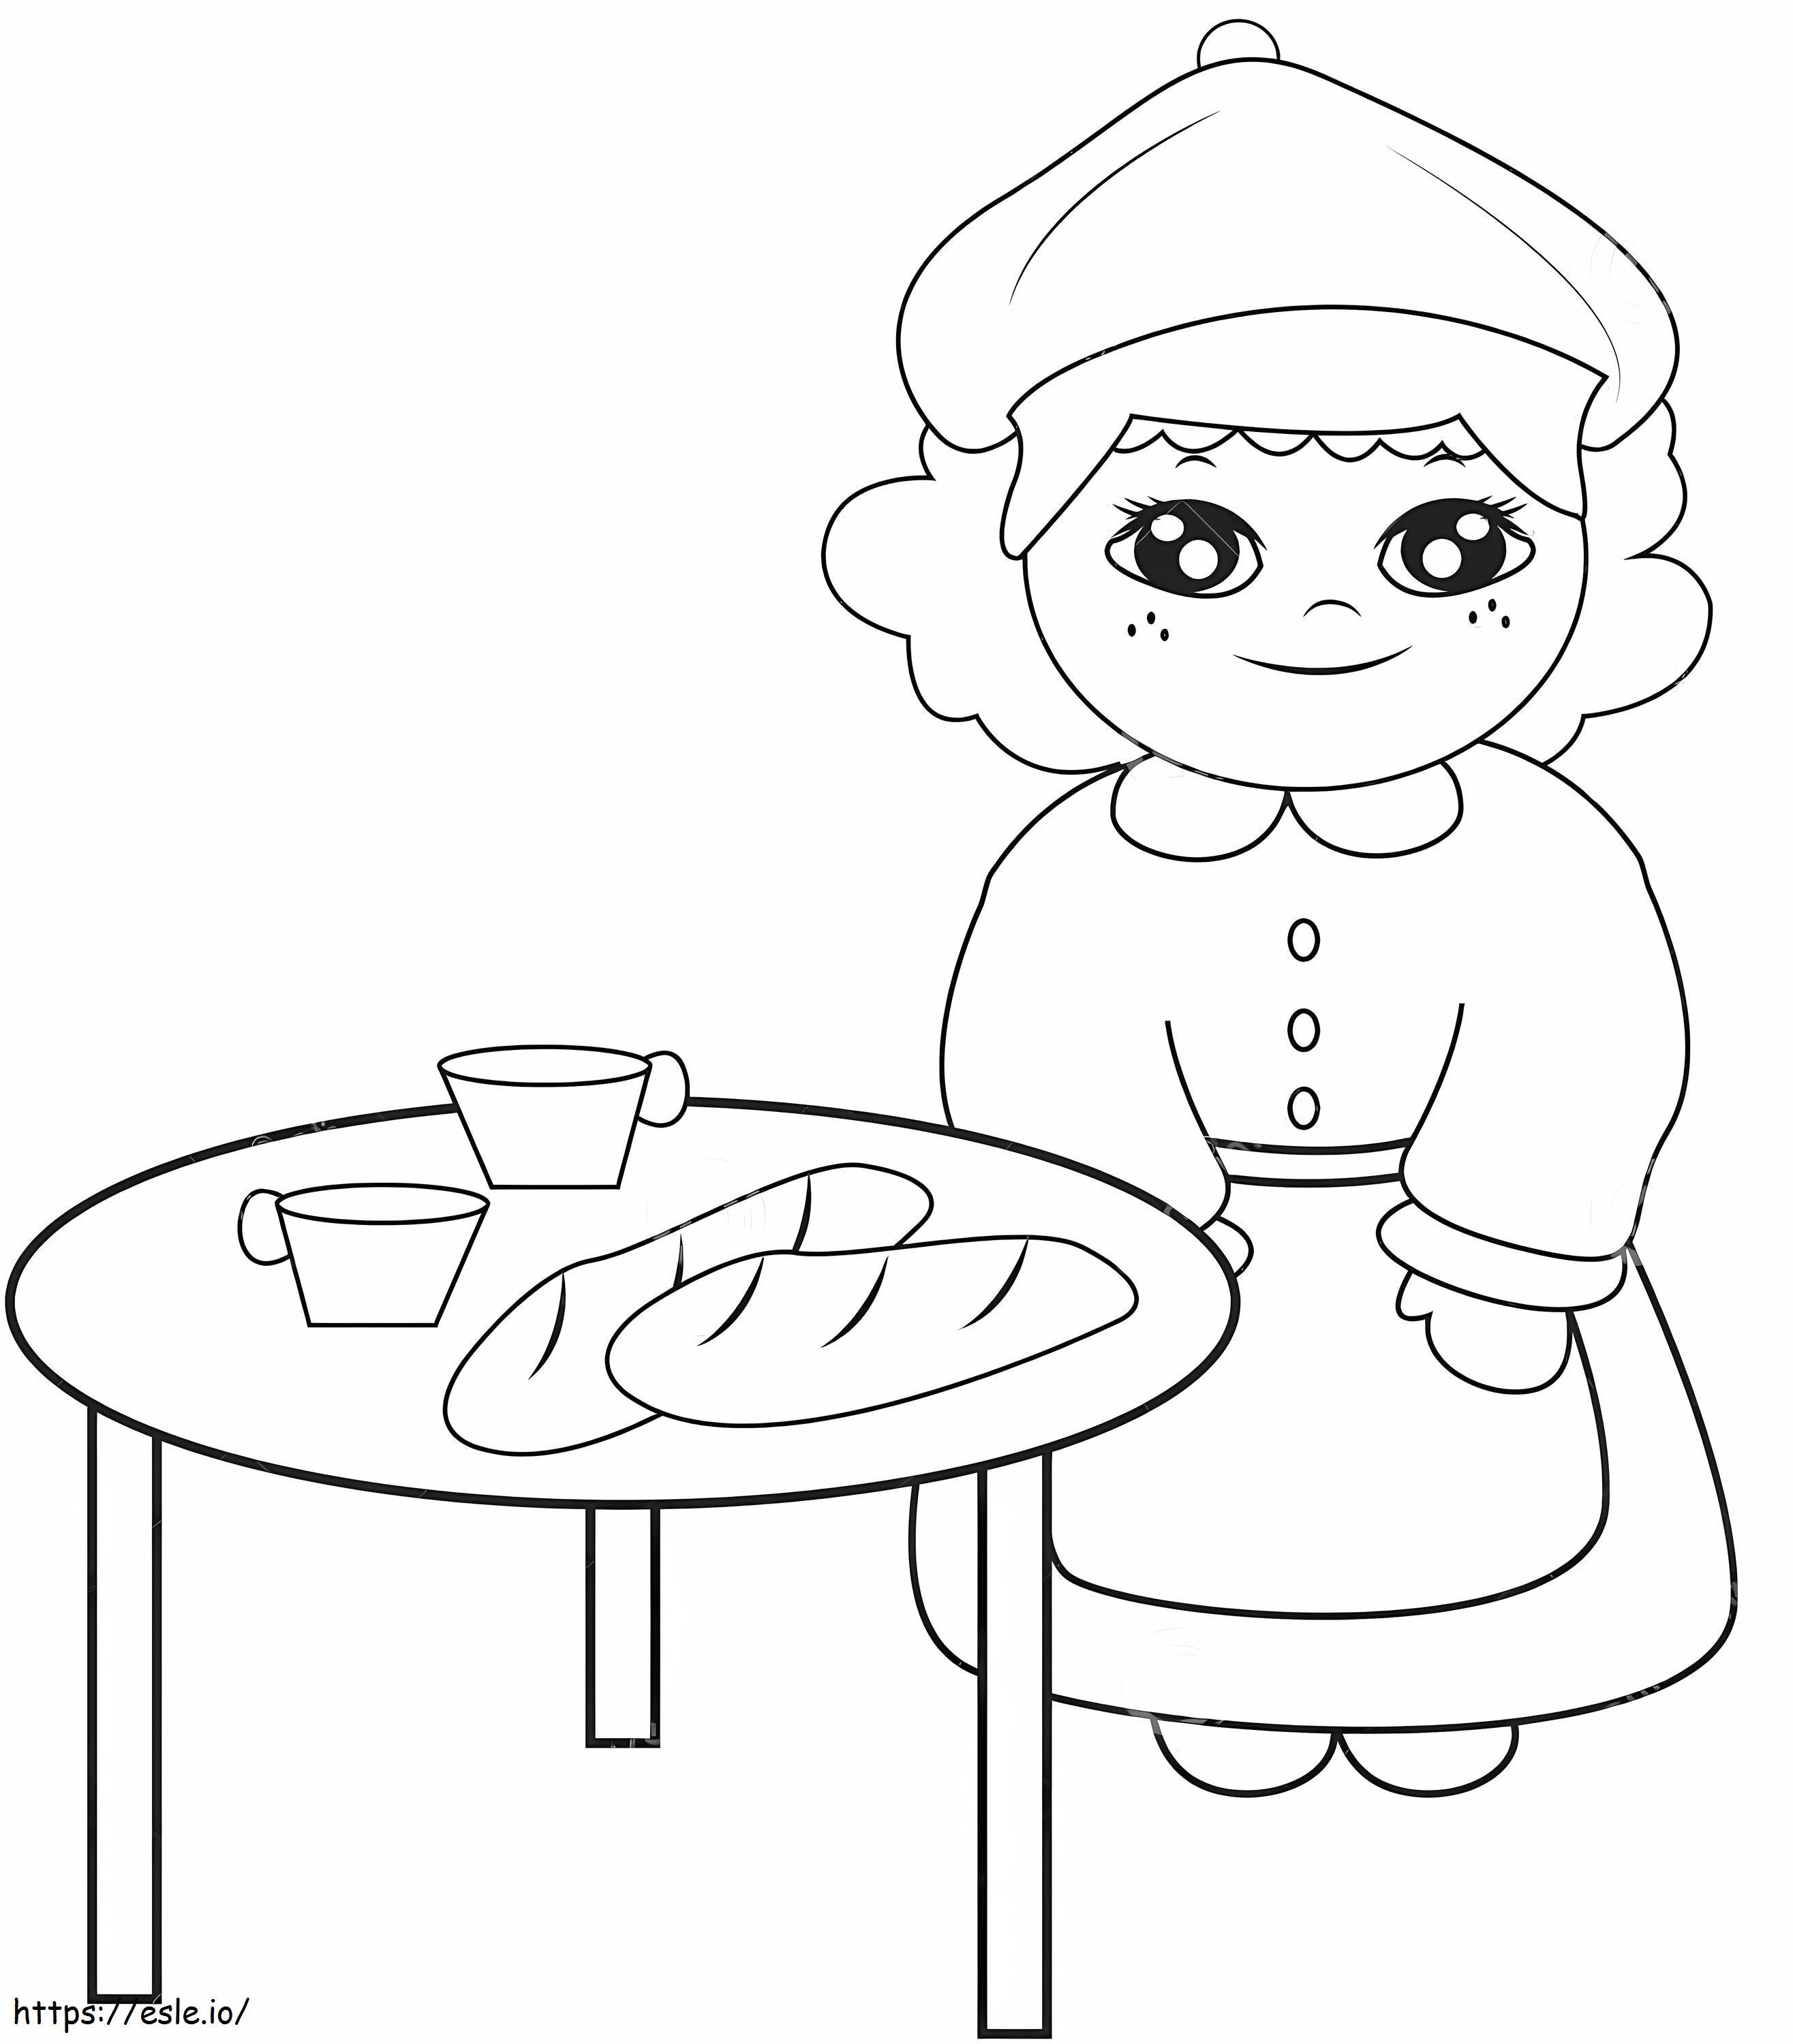 Brot und Tee auf dem Tisch ausmalbilder